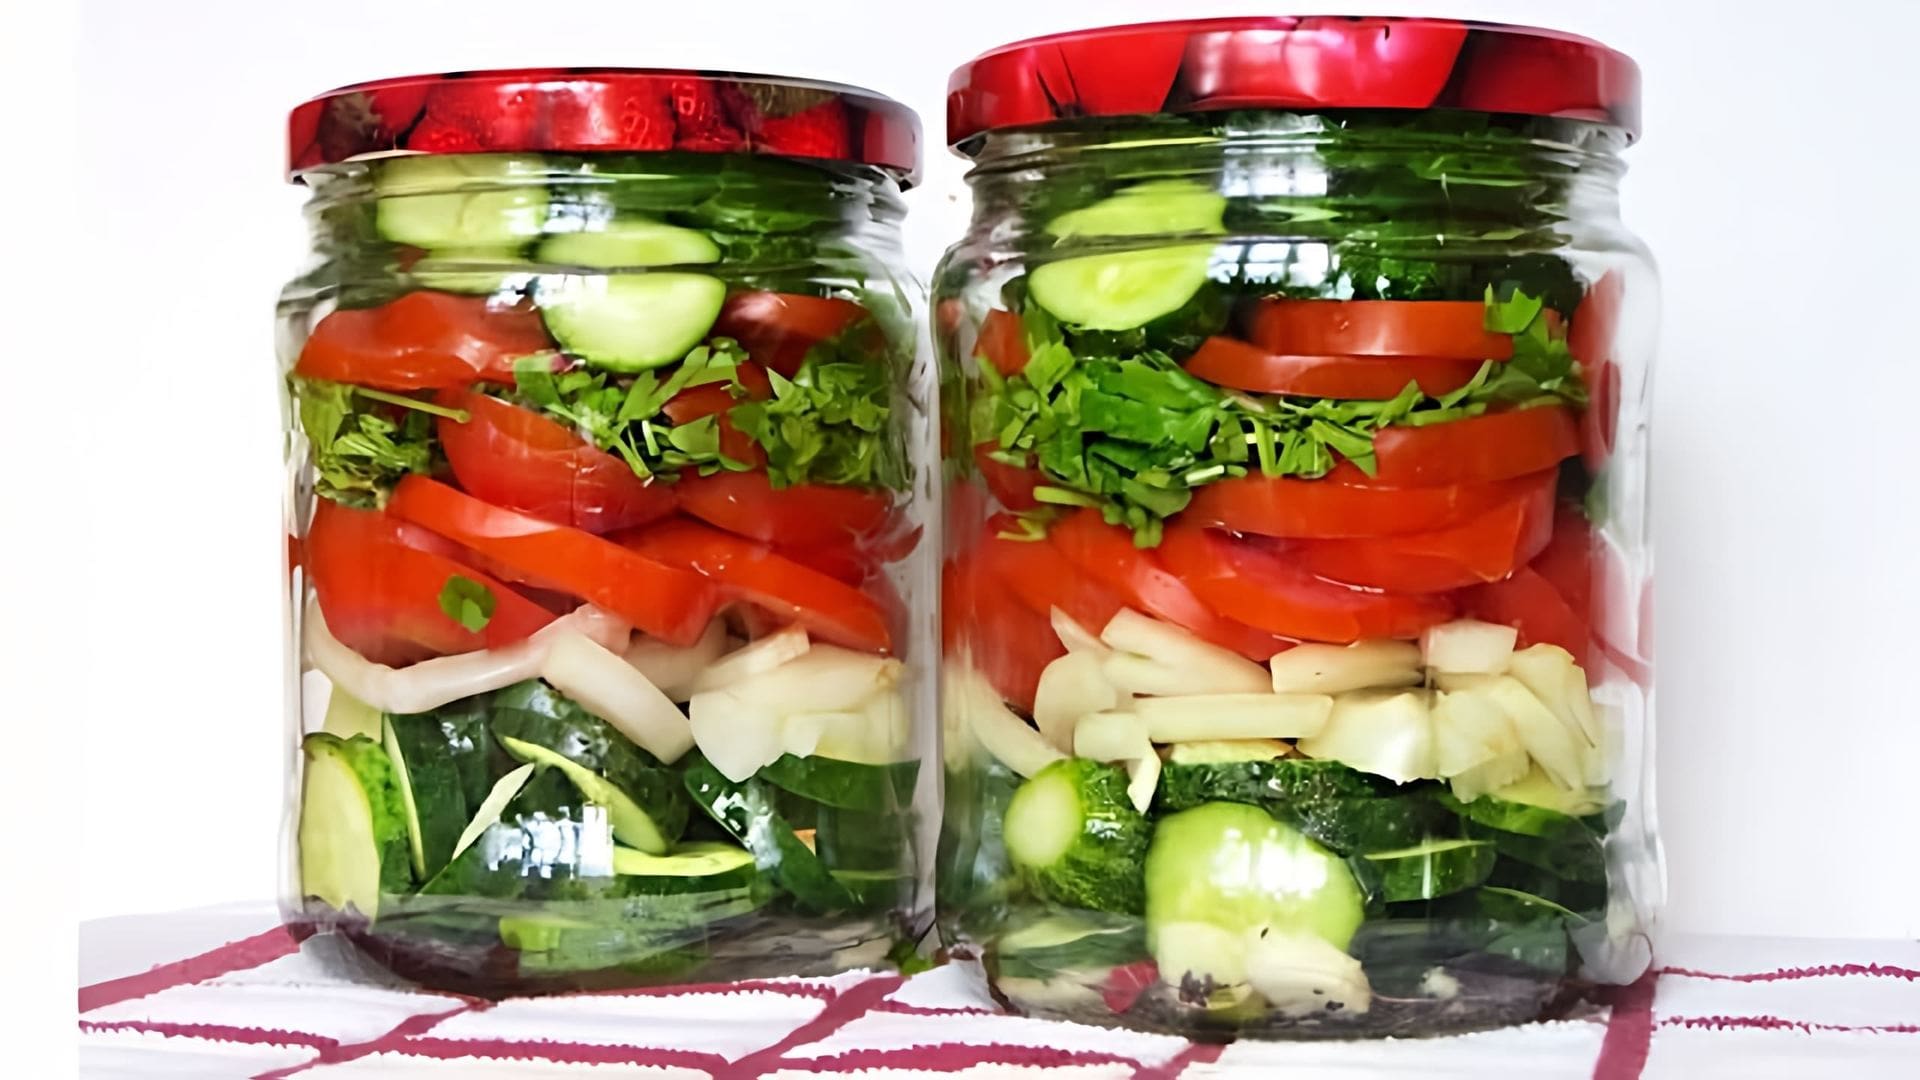 Видео как приготовить маринованный овощной салат с помидорами, огурцами и луком на зиму без консервирования или стерилизации